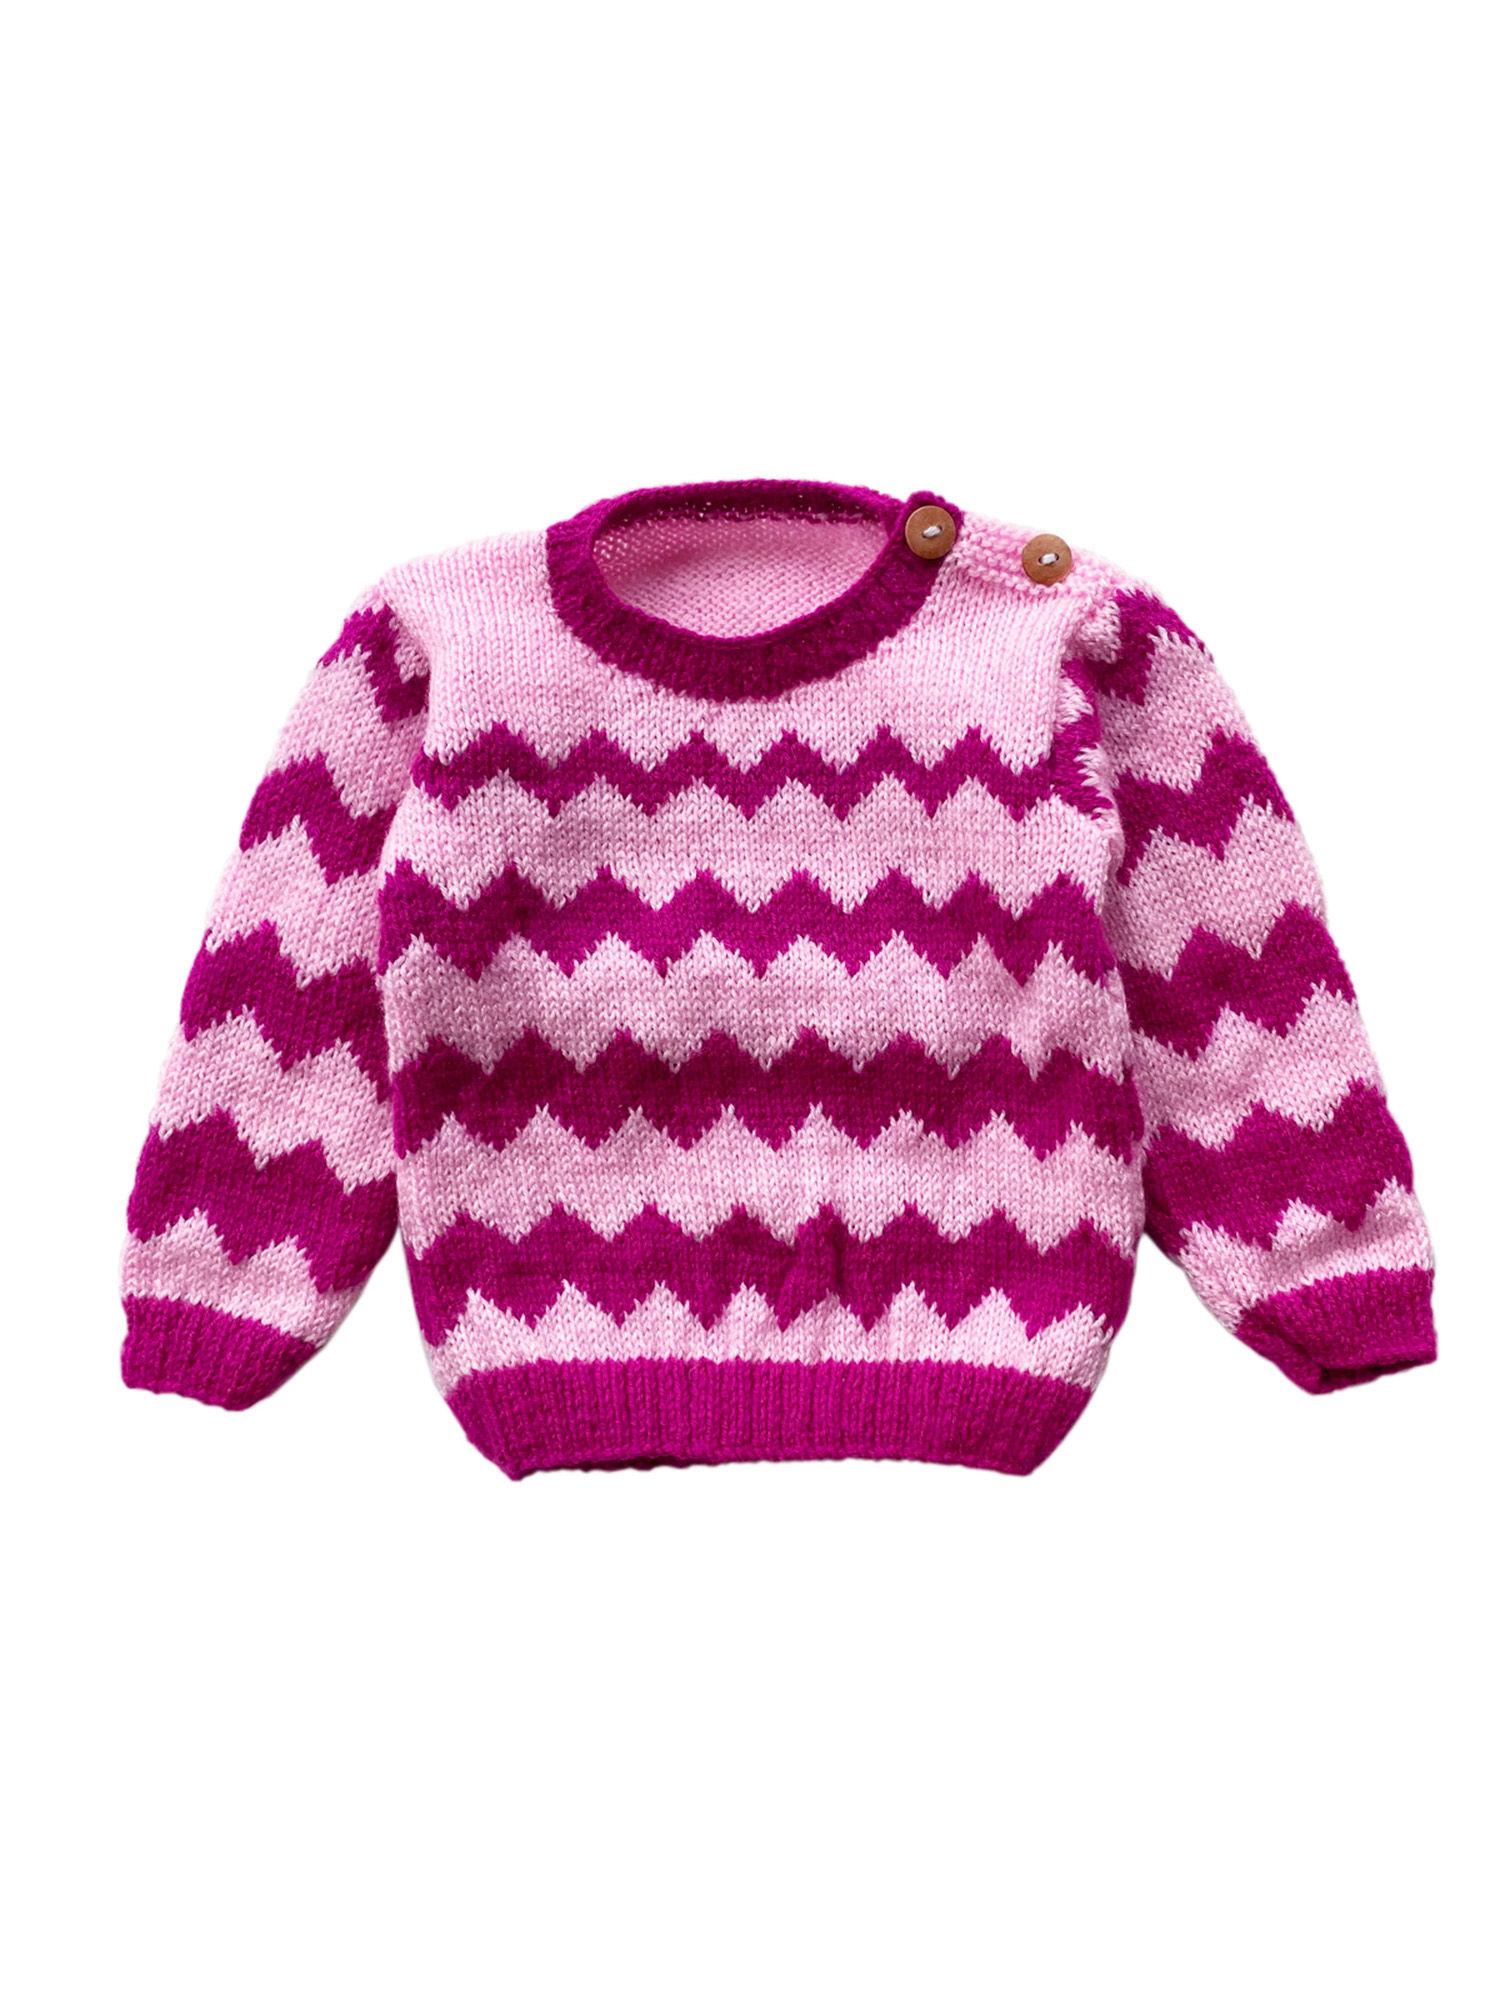 zig zag line hand knit sweater